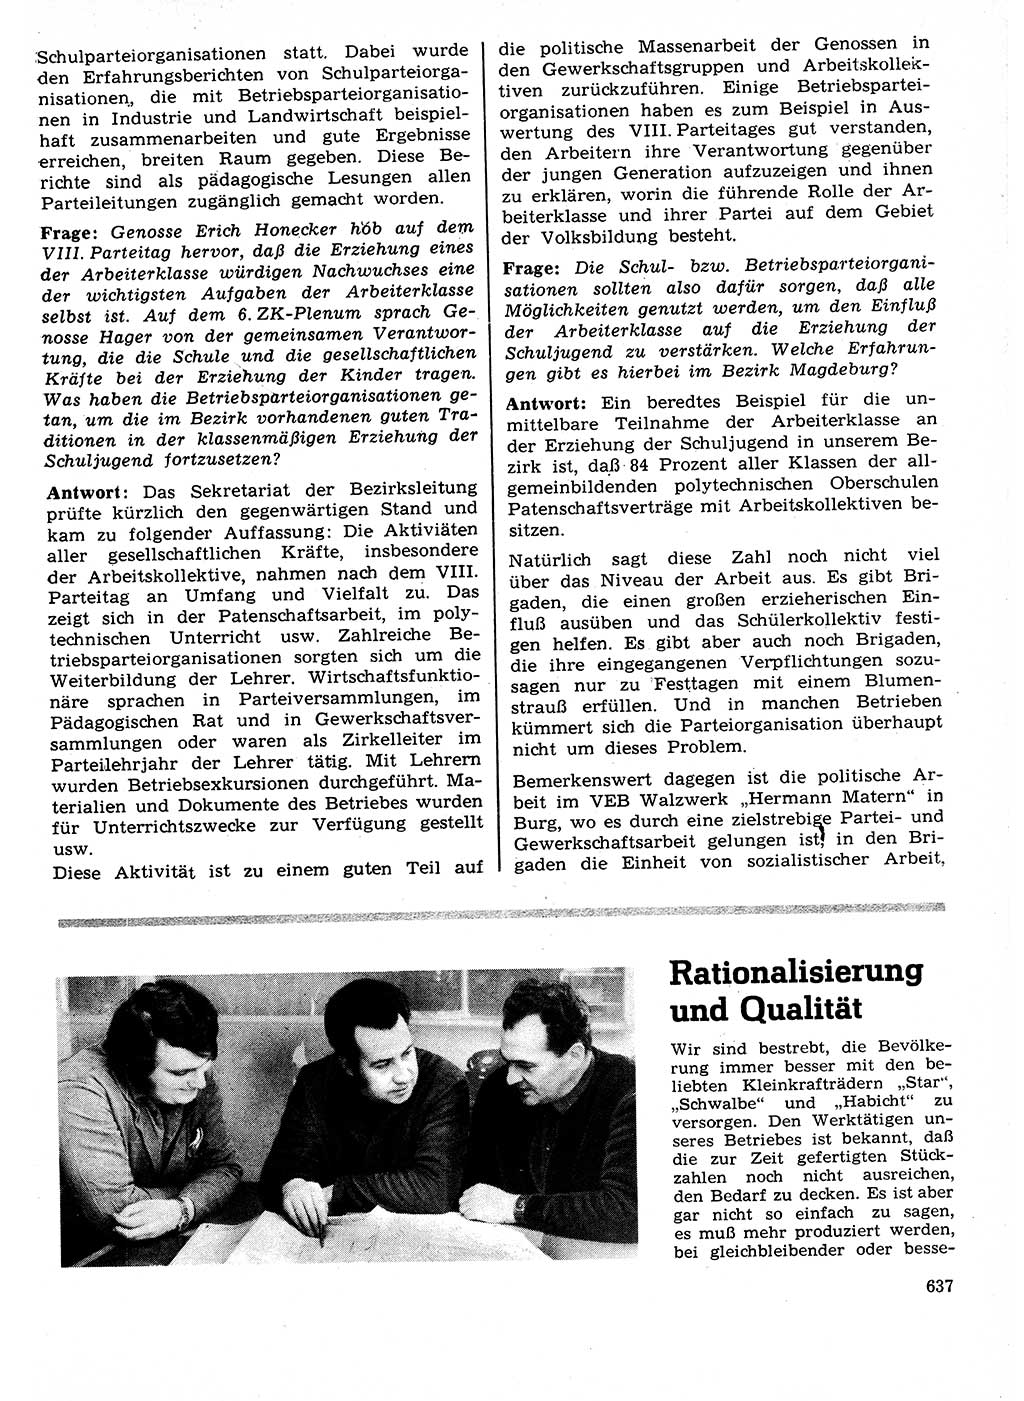 Neuer Weg (NW), Organ des Zentralkomitees (ZK) der SED (Sozialistische Einheitspartei Deutschlands) für Fragen des Parteilebens, 27. Jahrgang [Deutsche Demokratische Republik (DDR)] 1972, Seite 637 (NW ZK SED DDR 1972, S. 637)